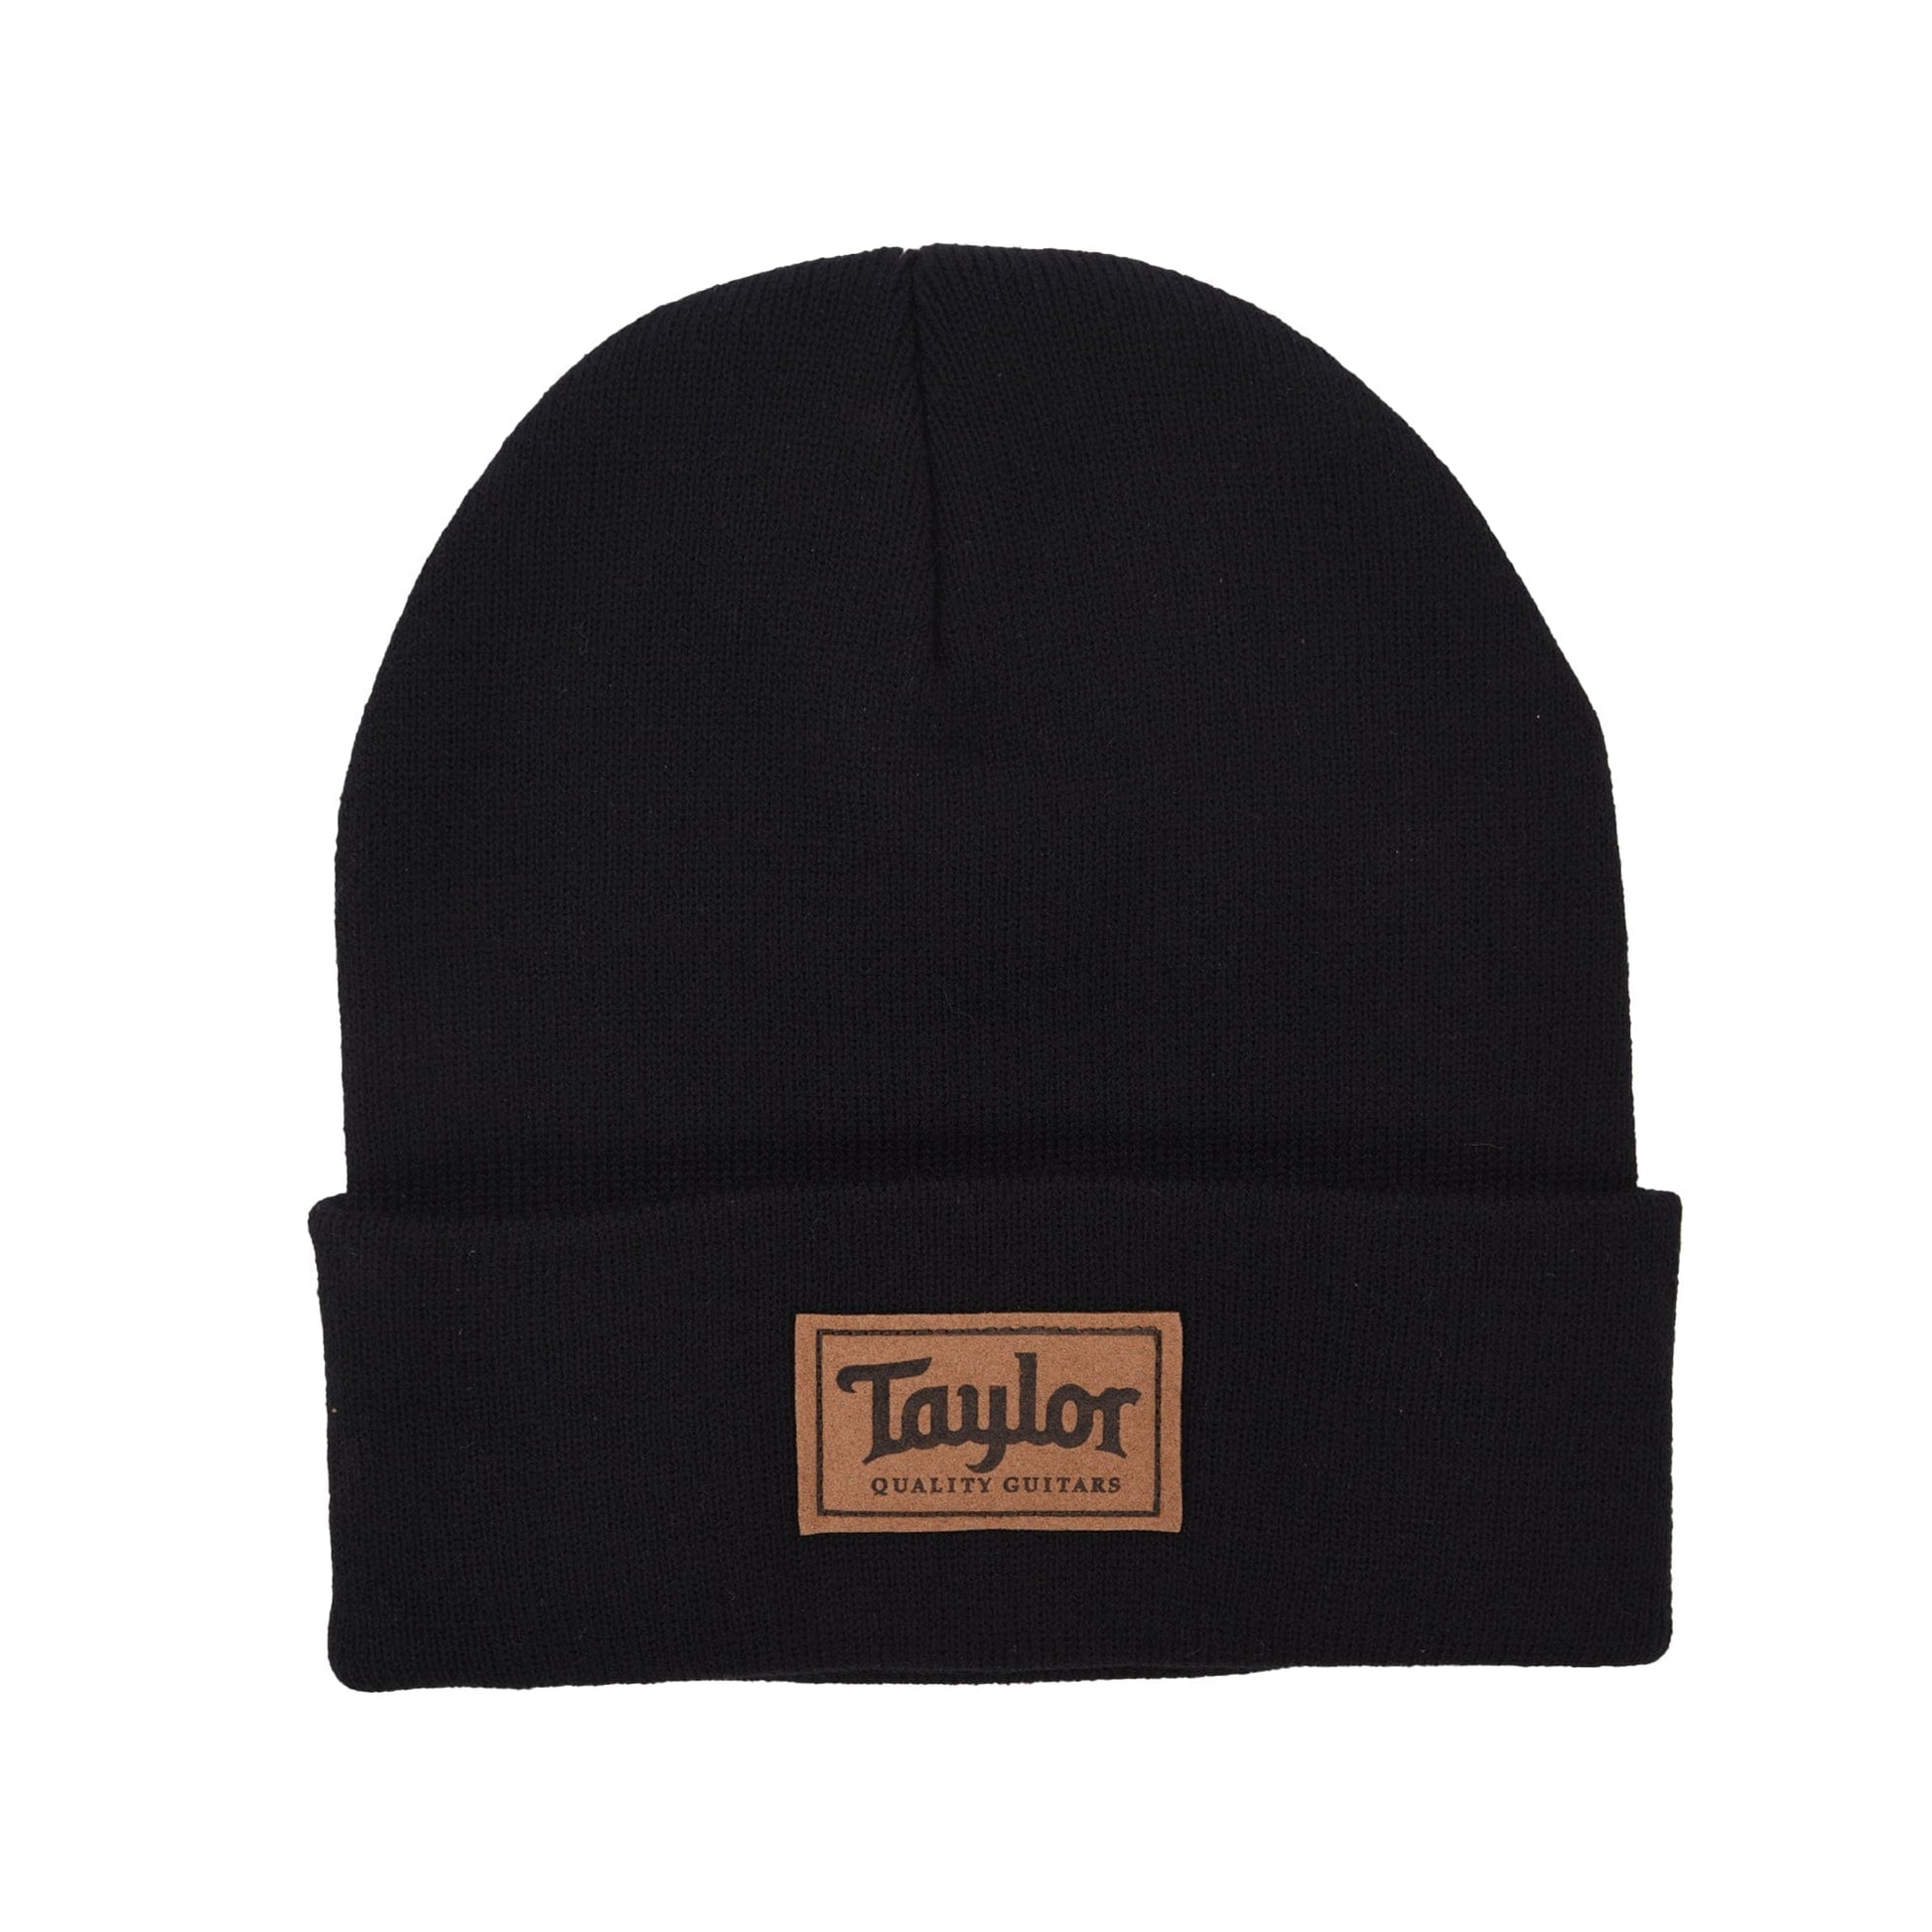 Taylor Beanie Black Accessories / Merchandise